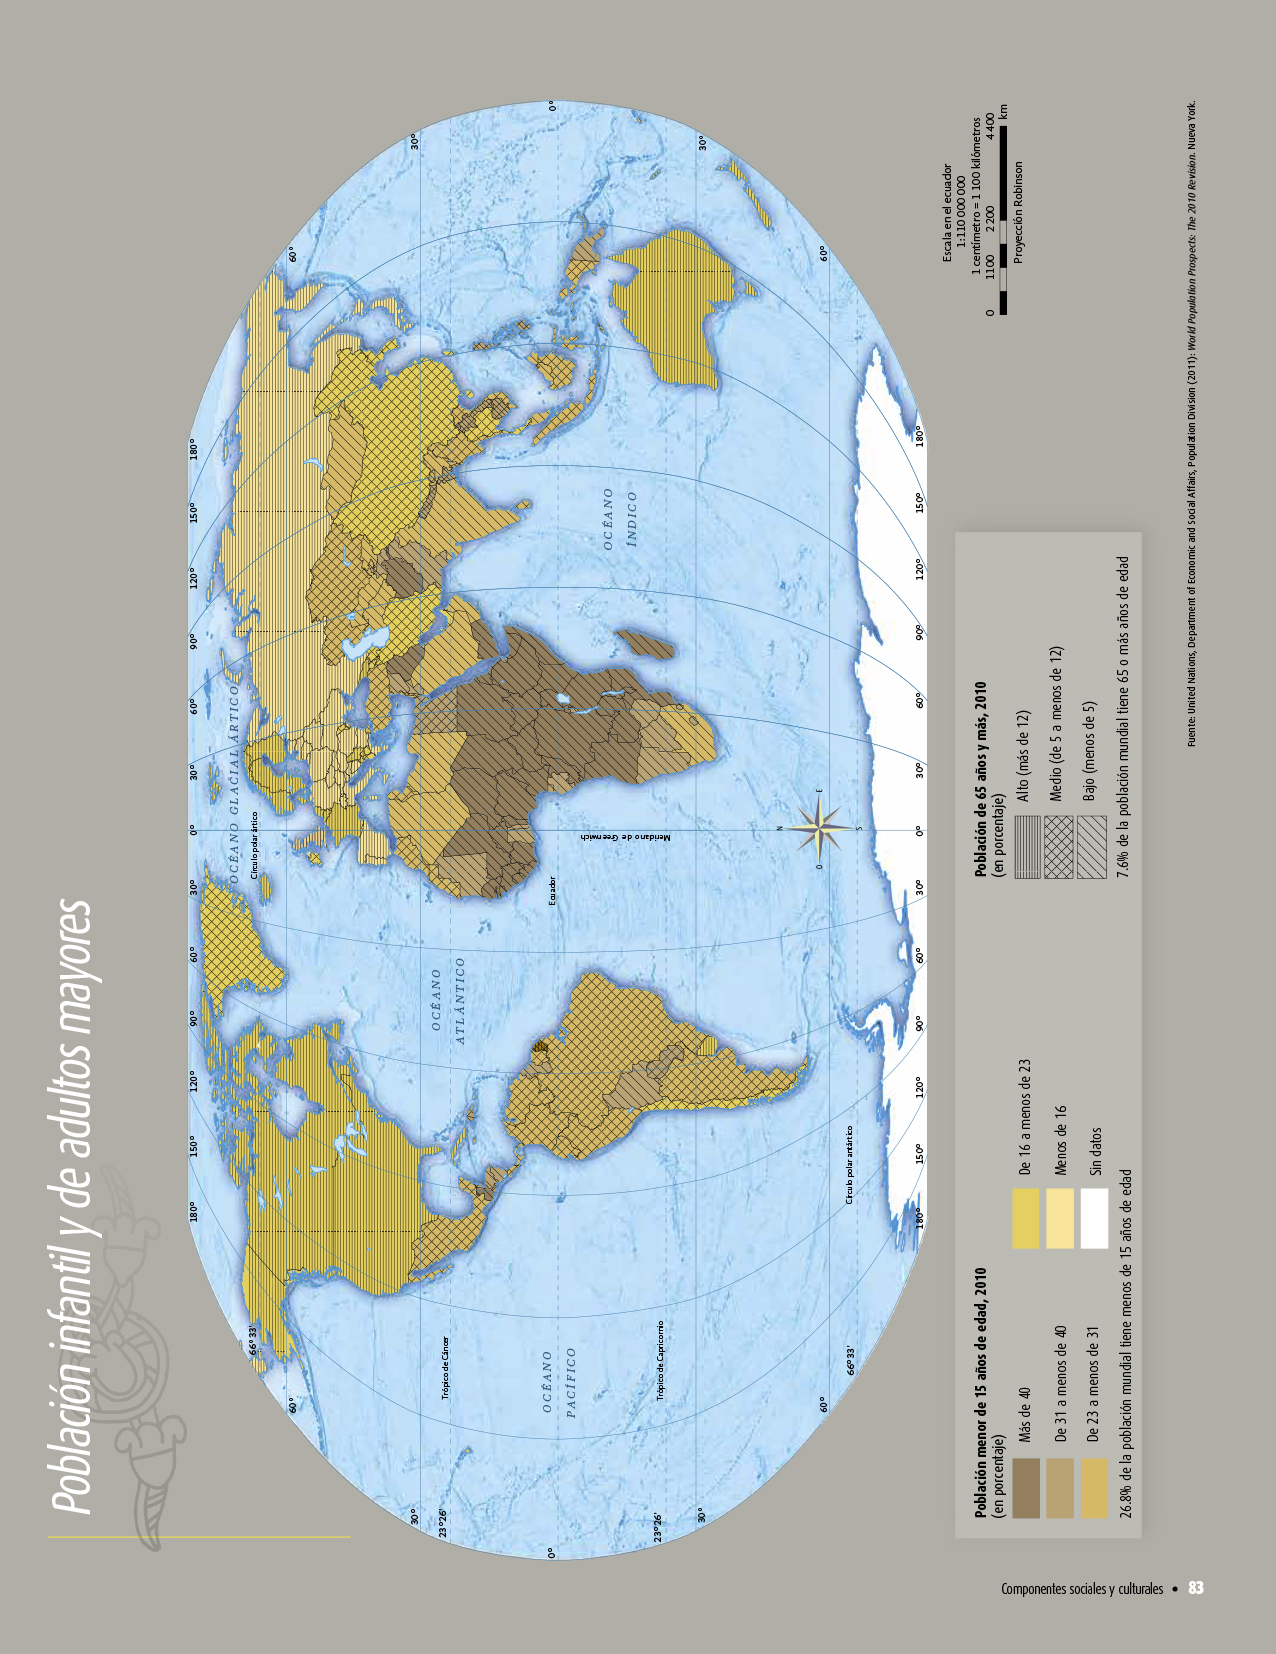 Atlas de geografía del mundo quinto grado 2017-2018 - Página 83 - Libros de Texto Online